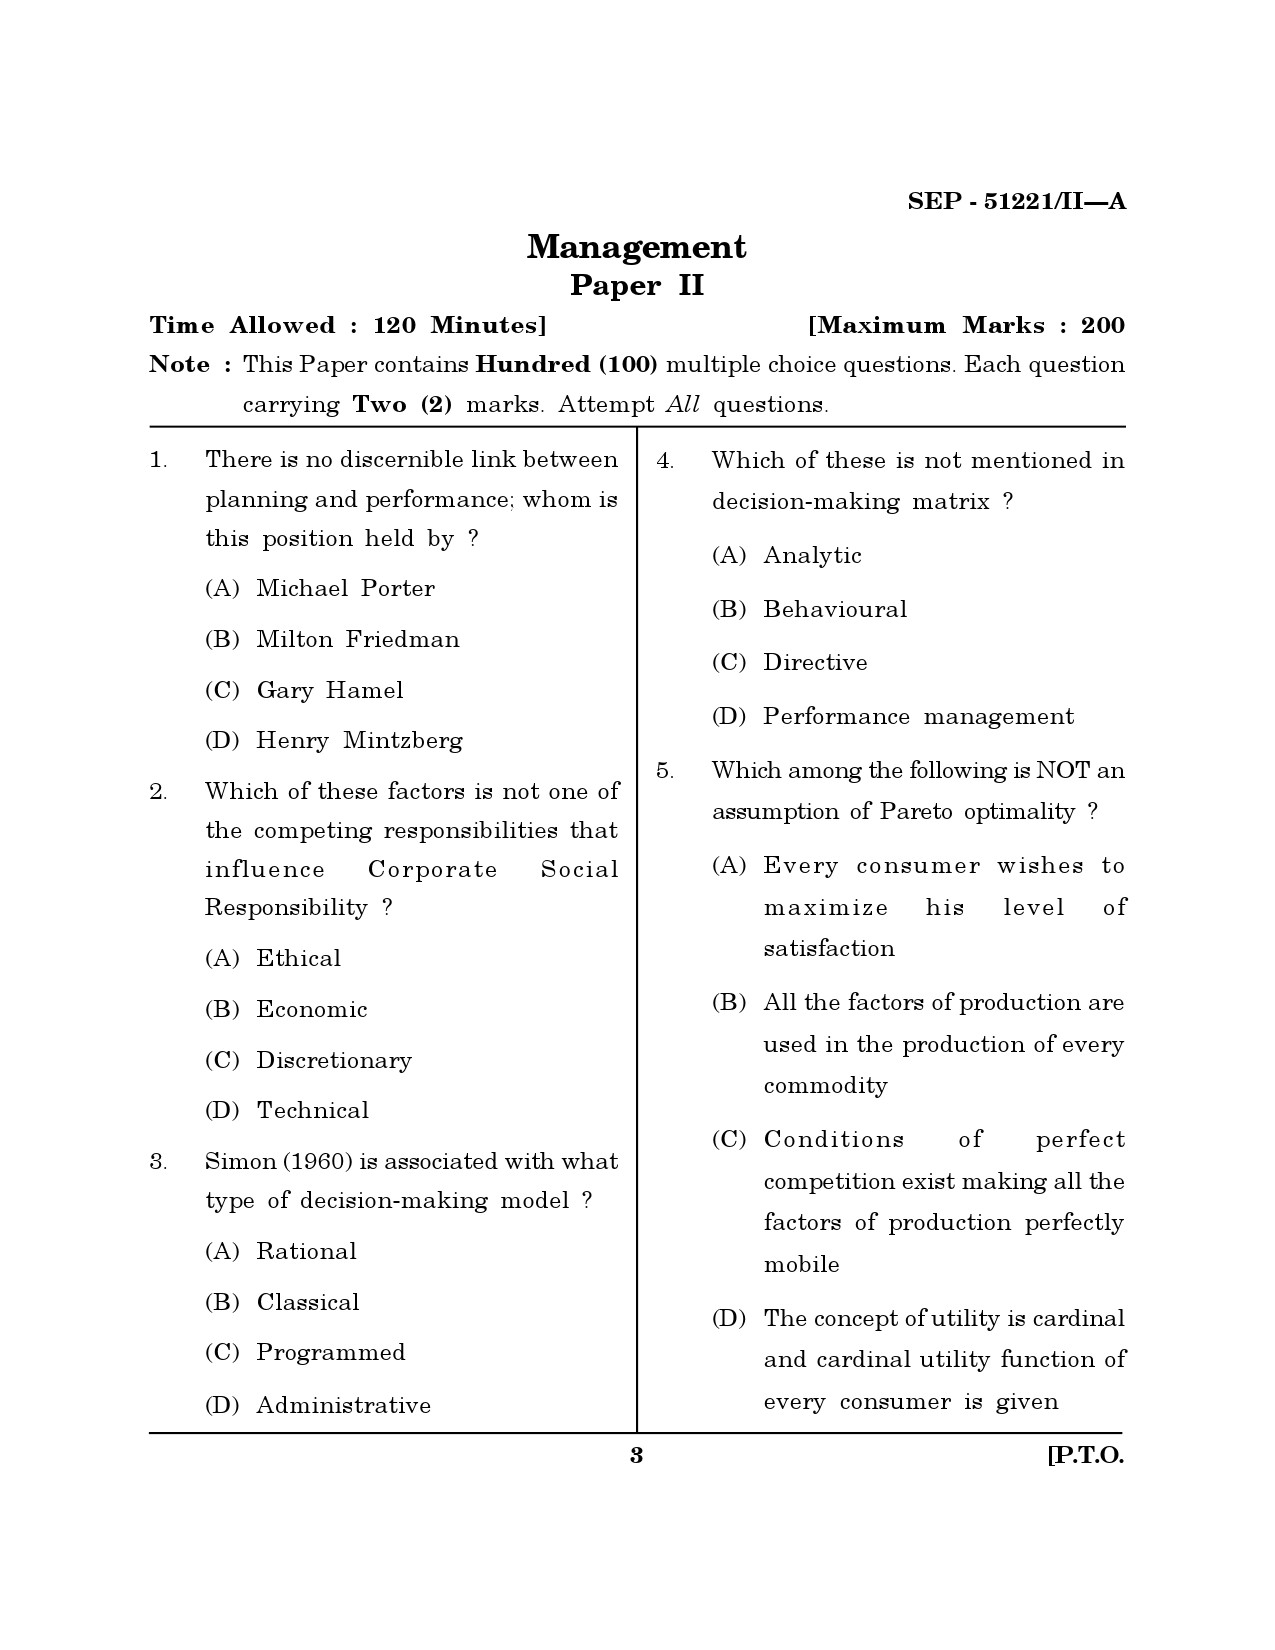 Maharashtra SET Management Exam Question Paper September 2021 2